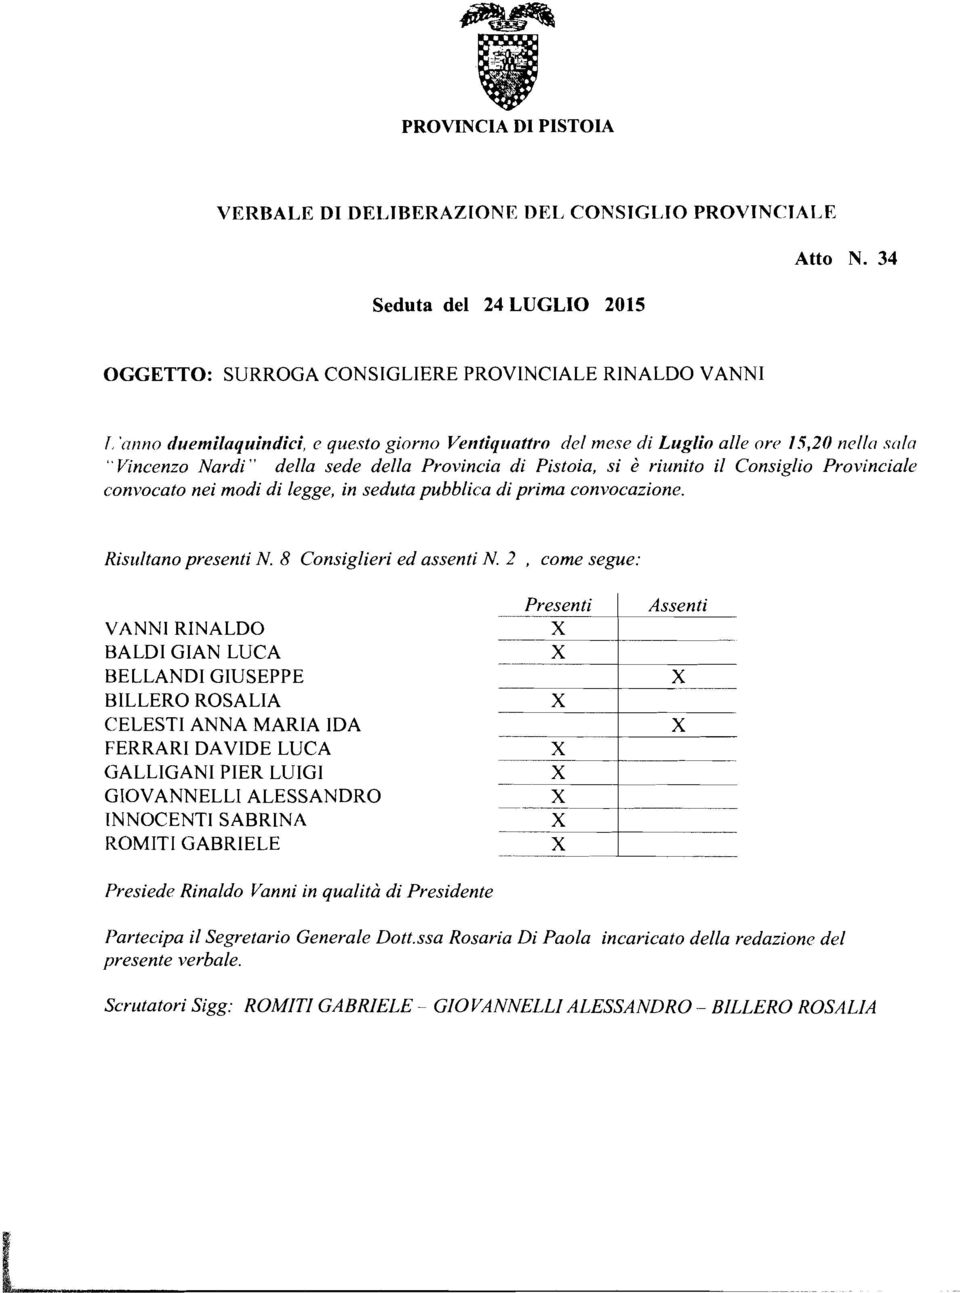 5,20 ncllr strln "Vincenzo Nardi" della sede della Provincia di Pistoia, si è riunito il Consiglio Provincialc~ convocato nei modi di legge, in seduta pubblica di prima convocazione.